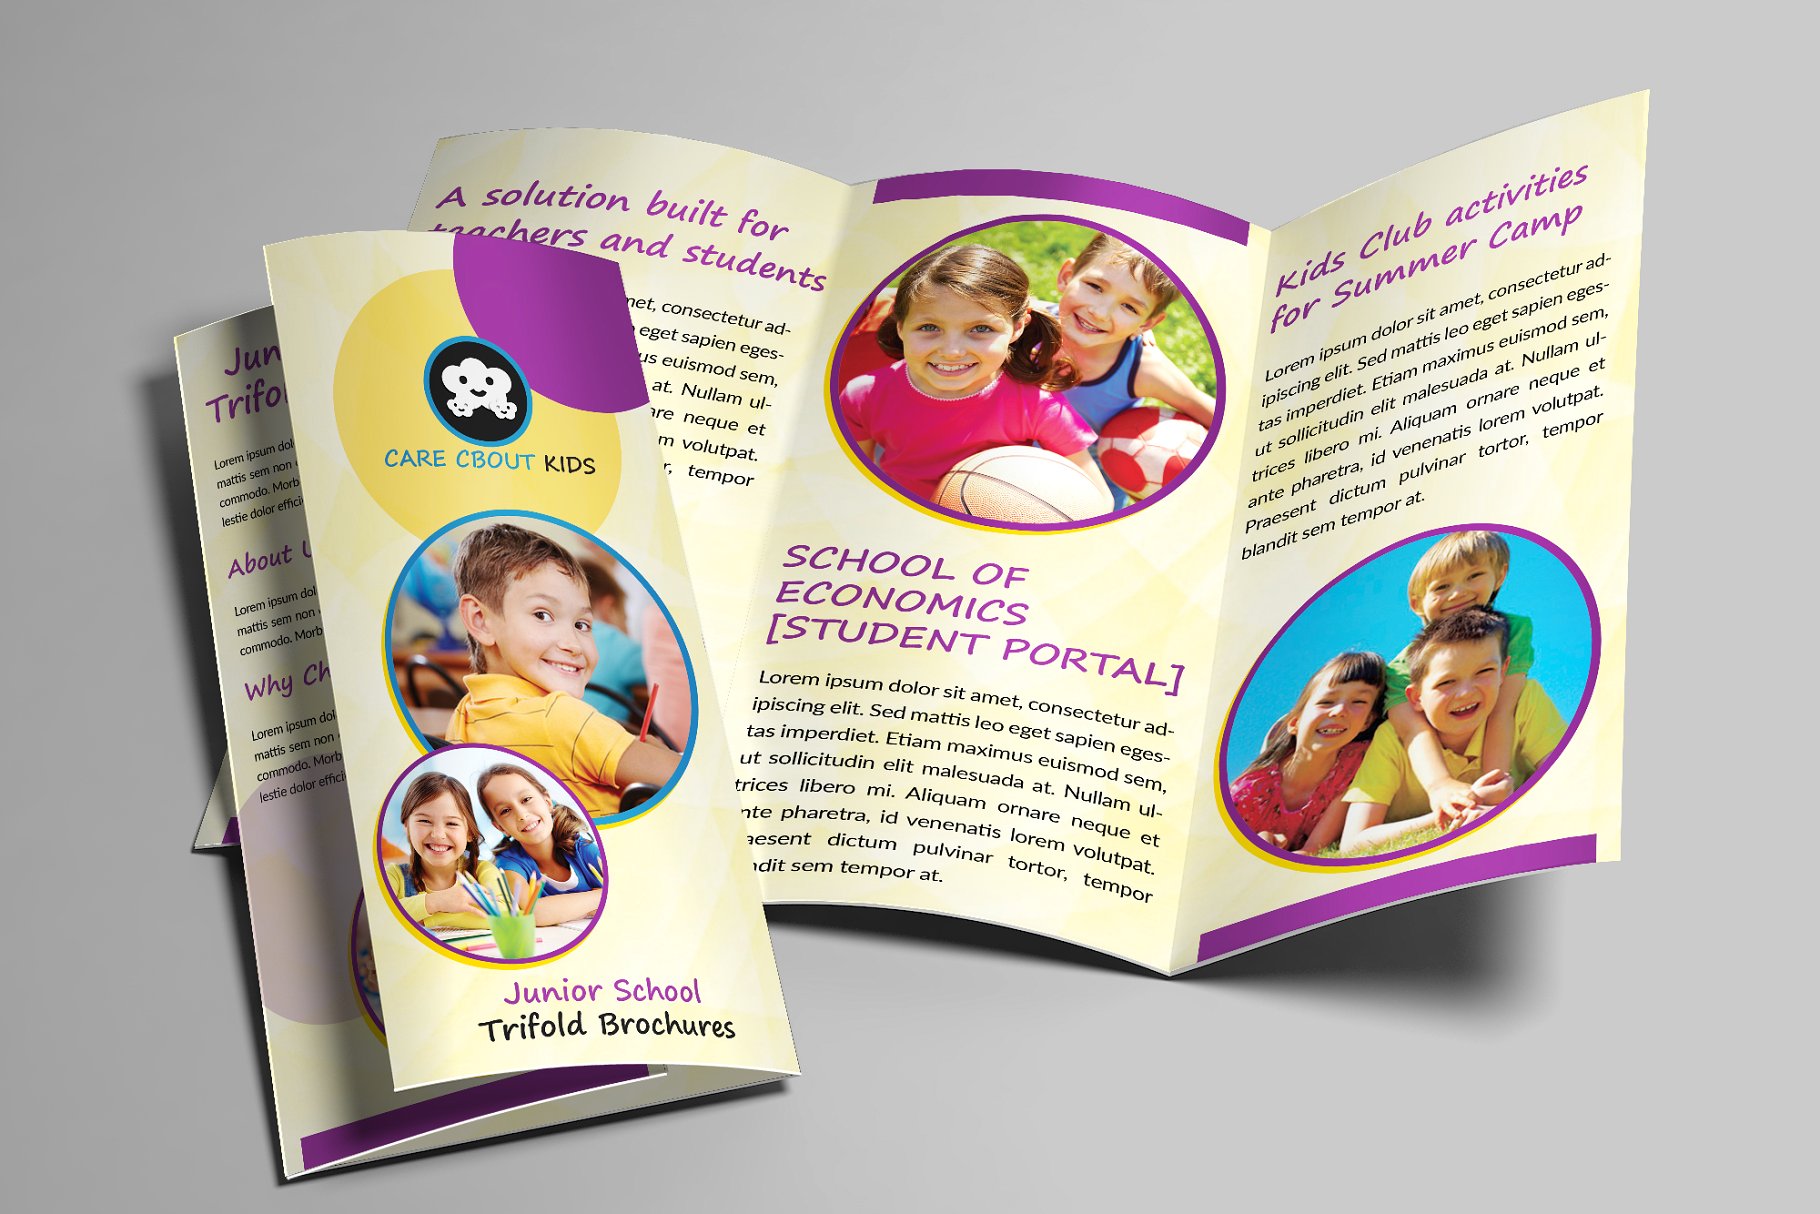 初中学校生活主题折页小册子模板 Junior School Trifold Brochures插图